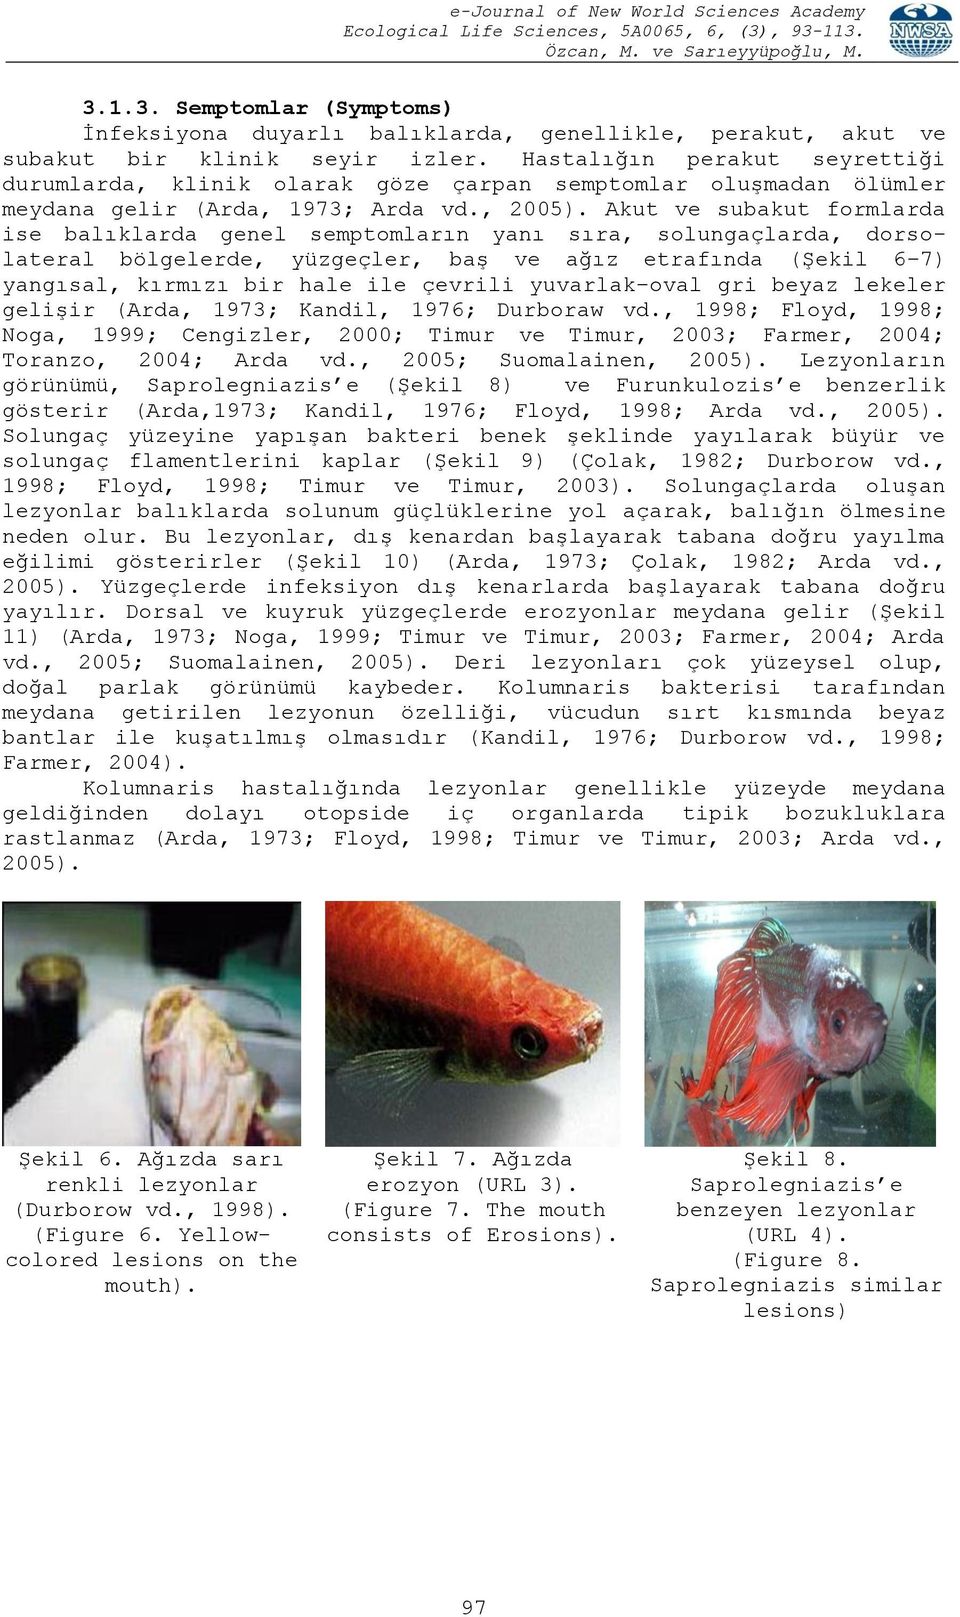 Akut ve subakut formlarda ise balıklarda genel semptomların yanı sıra, solungaçlarda, dorsolateral bölgelerde, yüzgeçler, baģ ve ağız etrafında (ġekil 6 7) yangısal, kırmızı bir hale ile çevrili